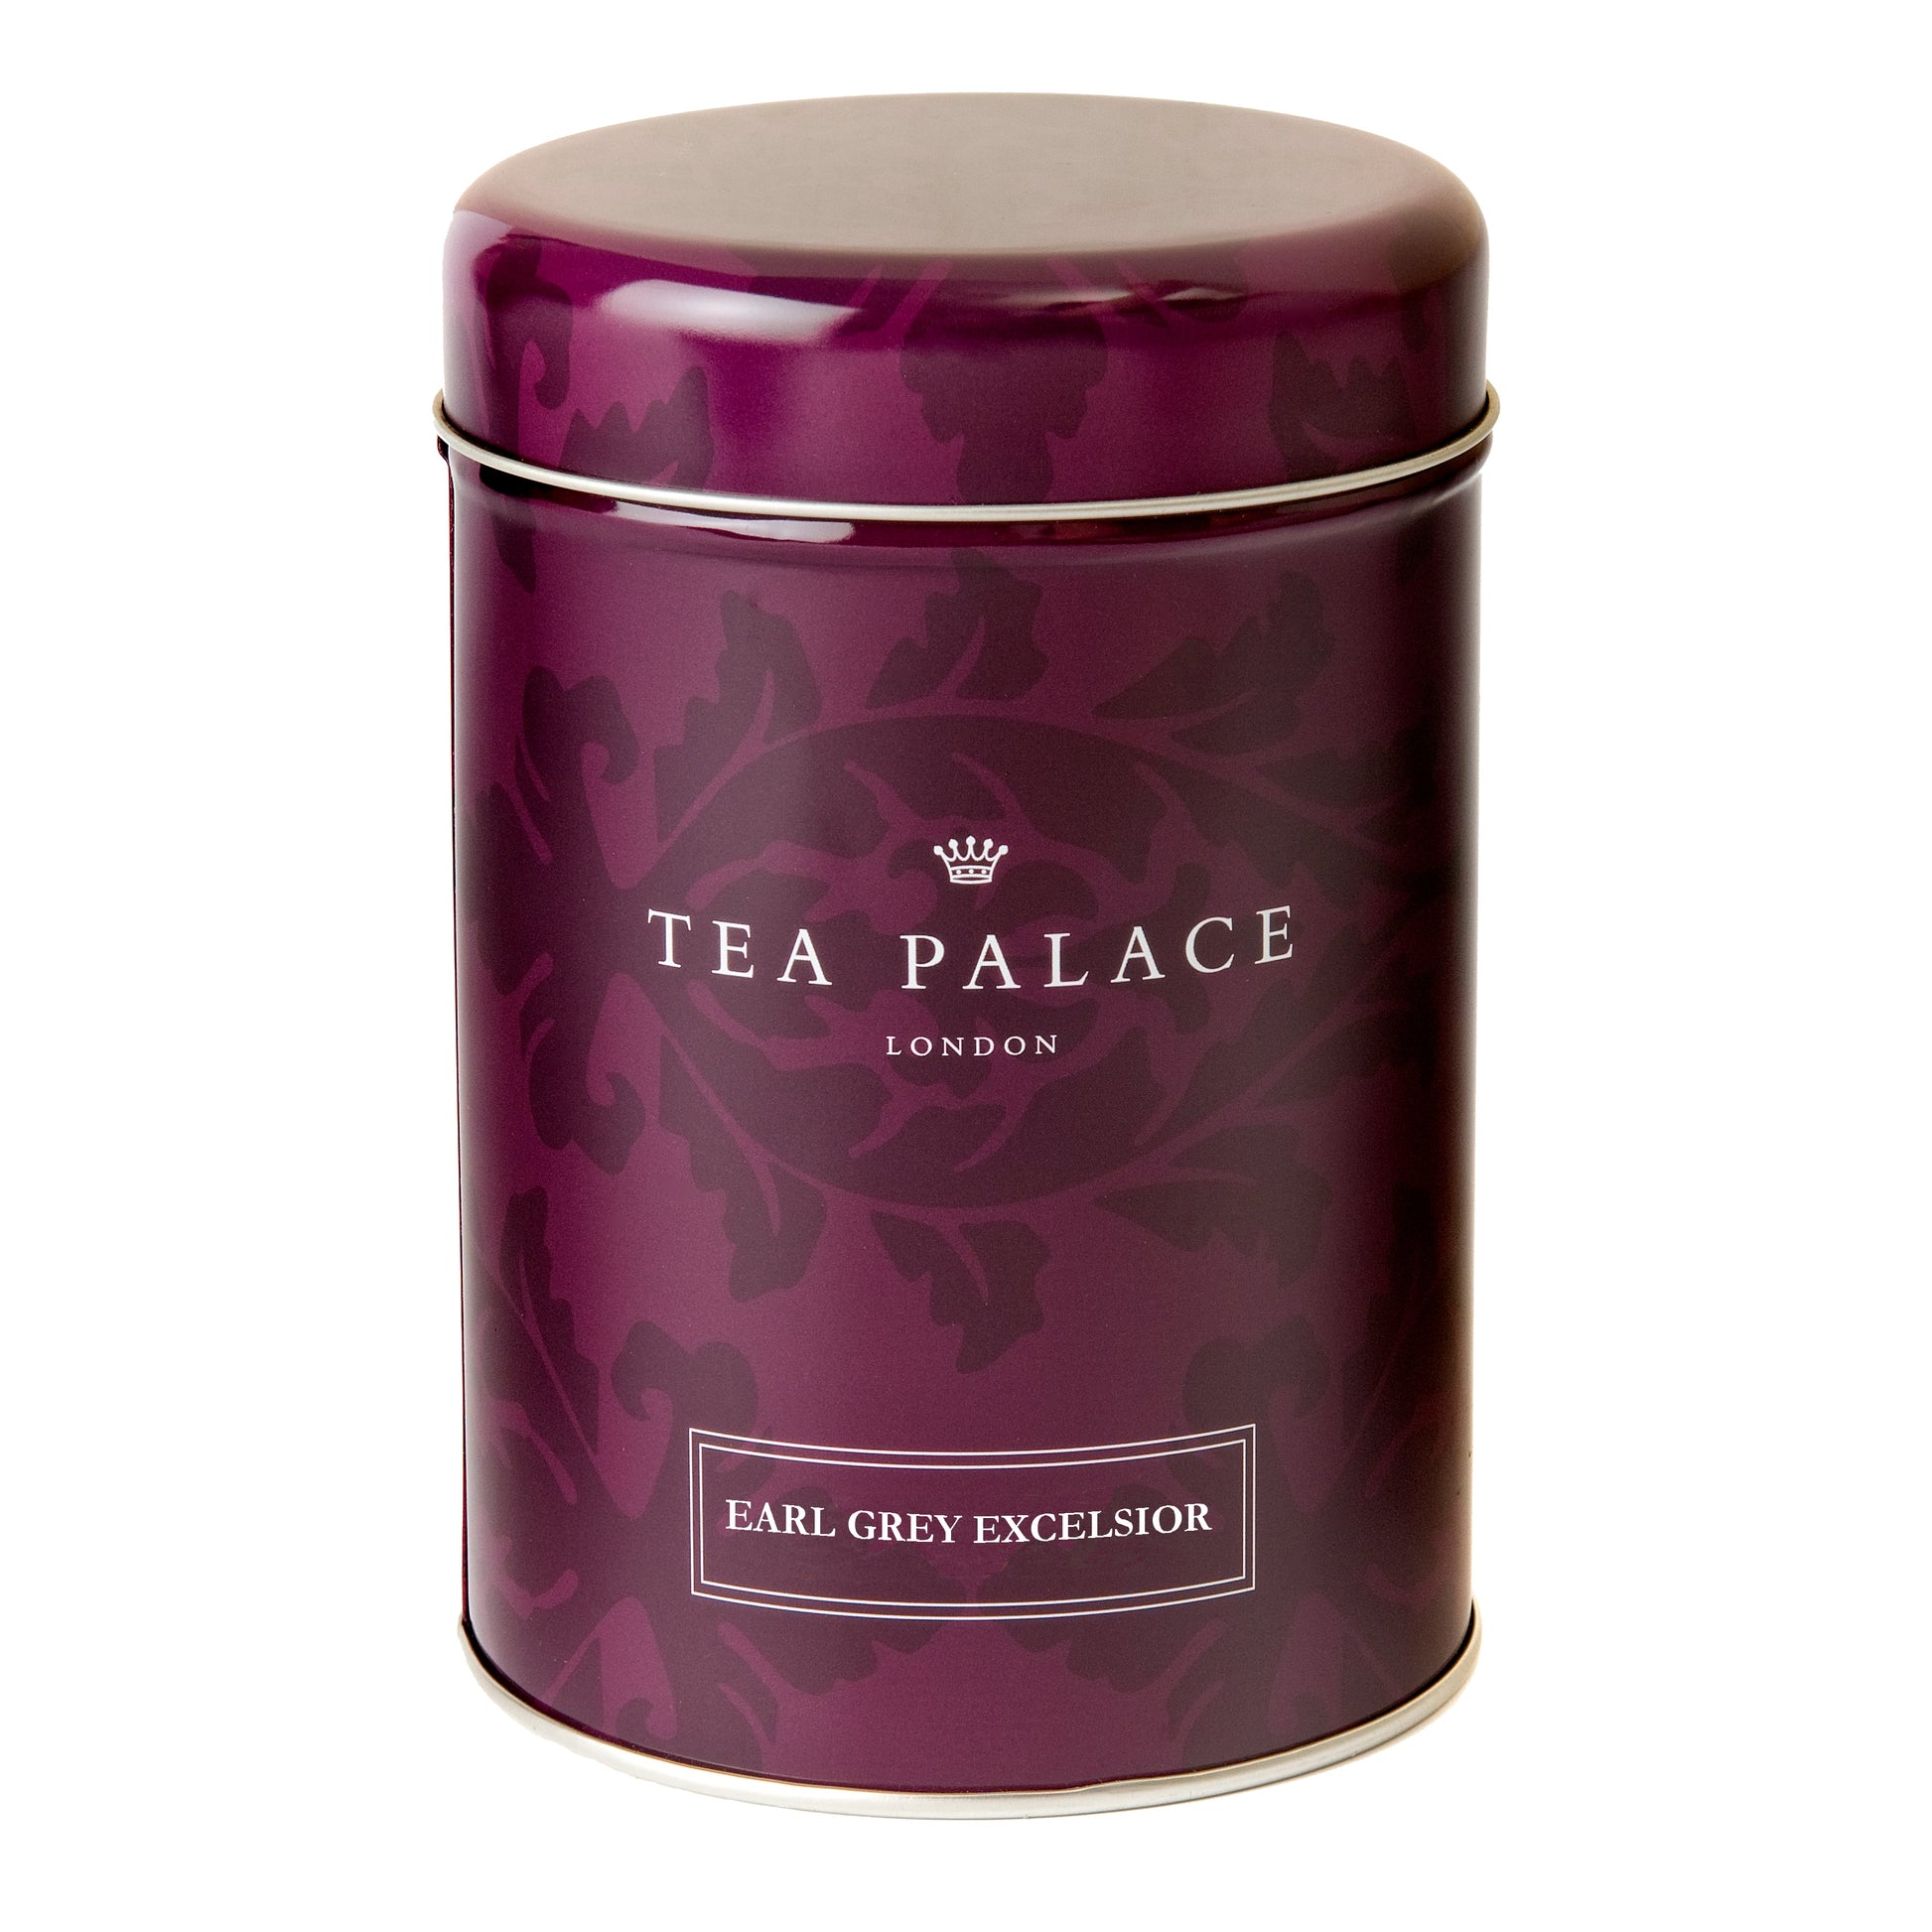 Tea Palace loose leaf Earl Grey tea caddy